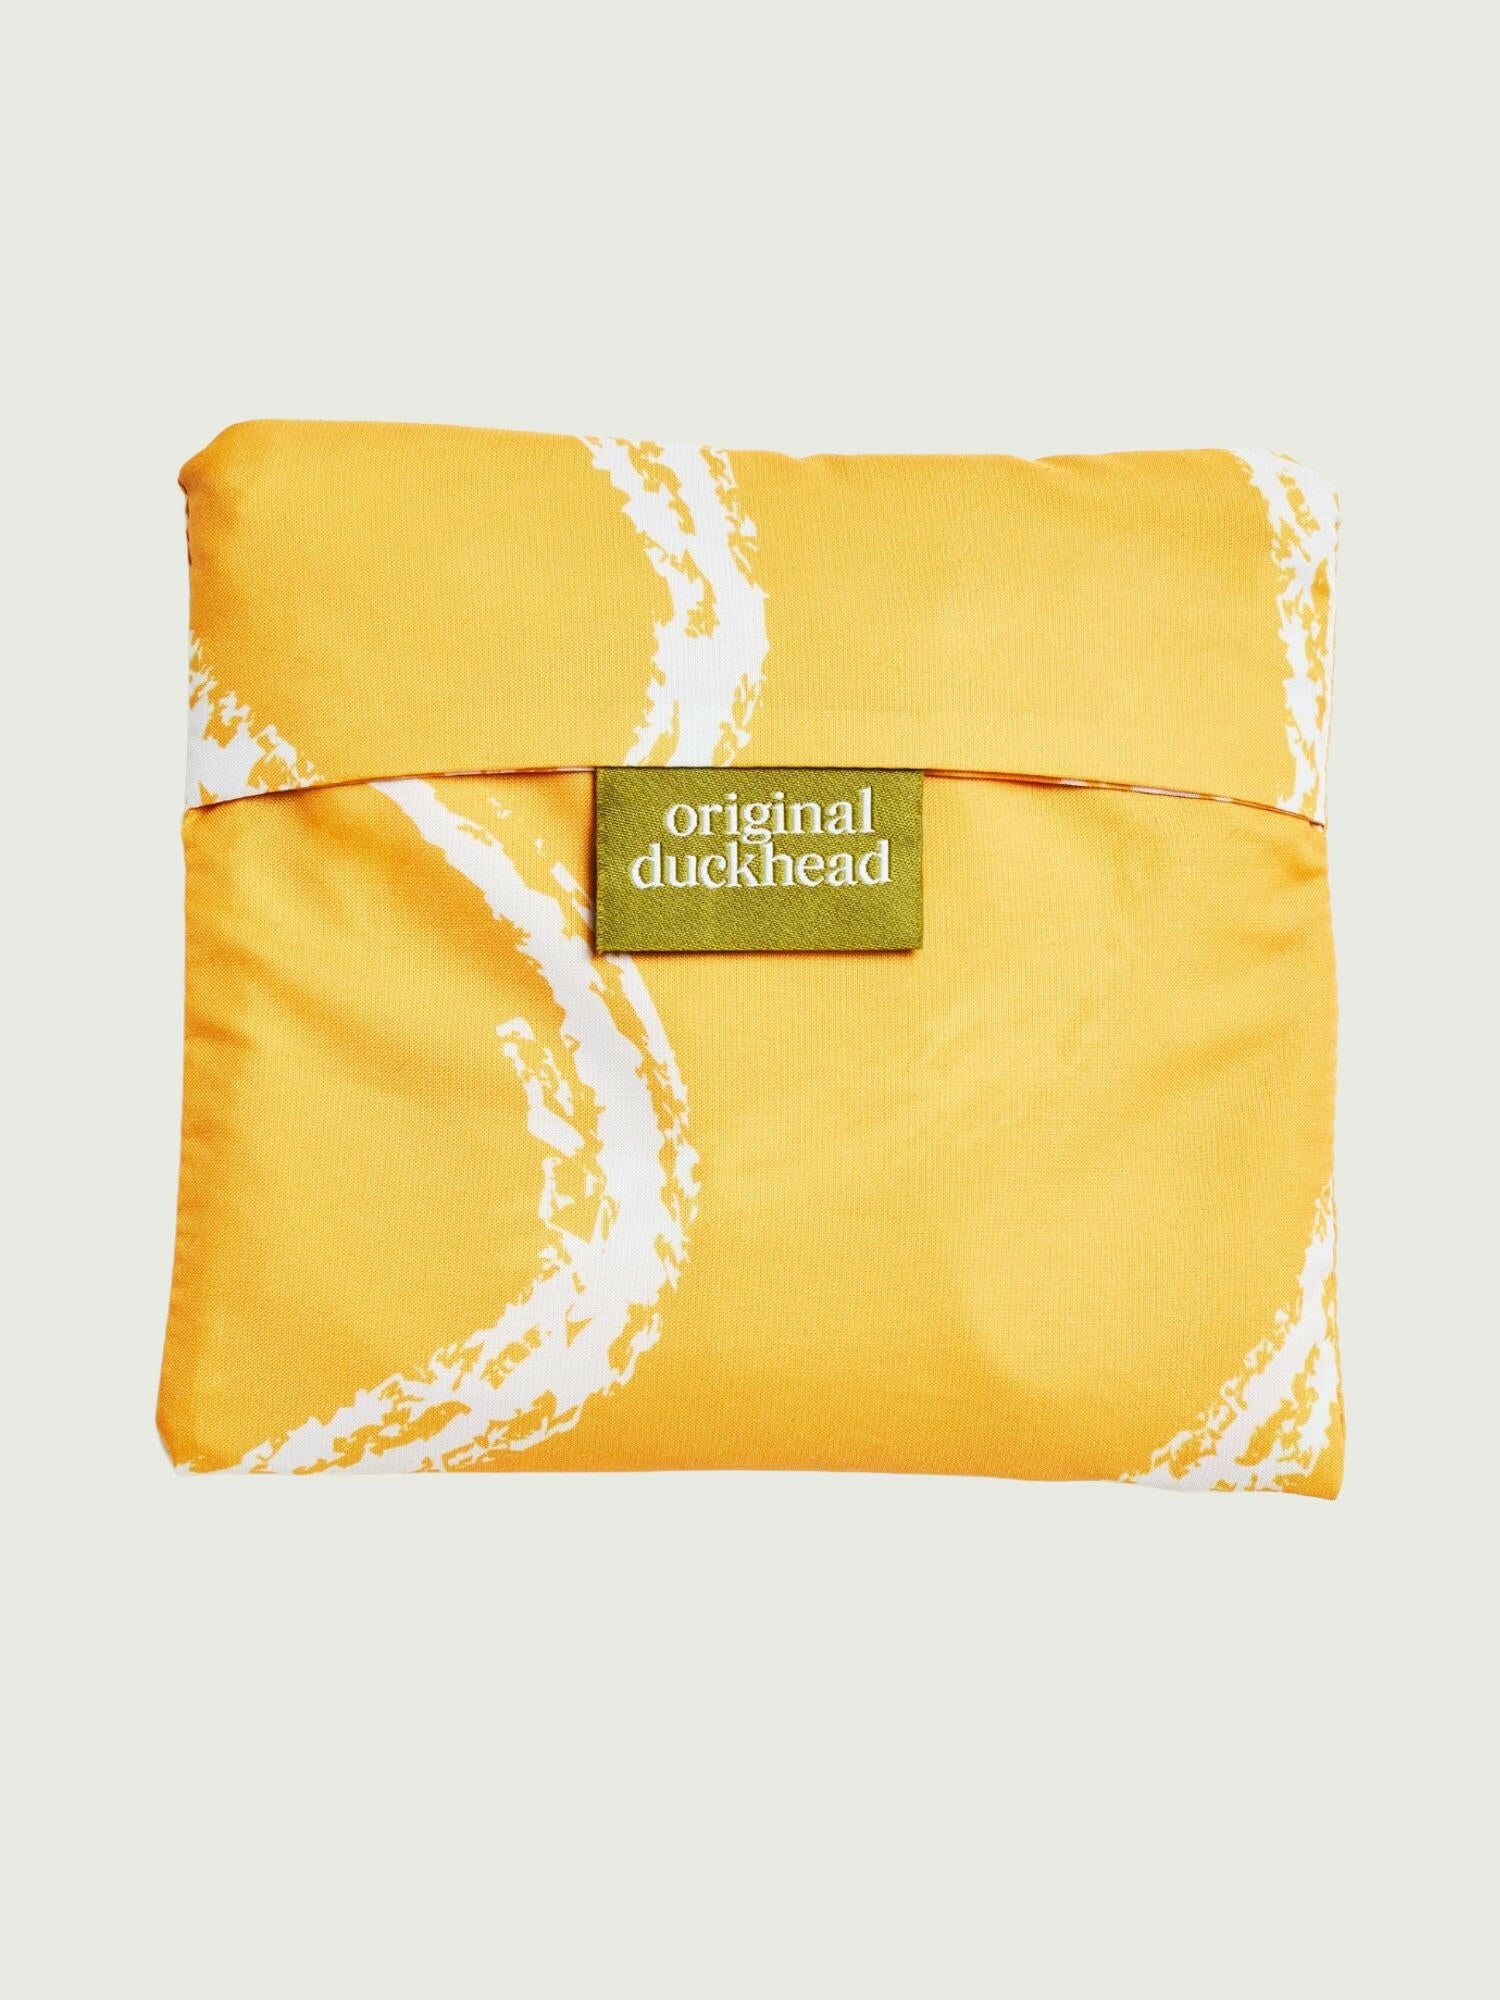 Saffron Brush Reusable Bag.